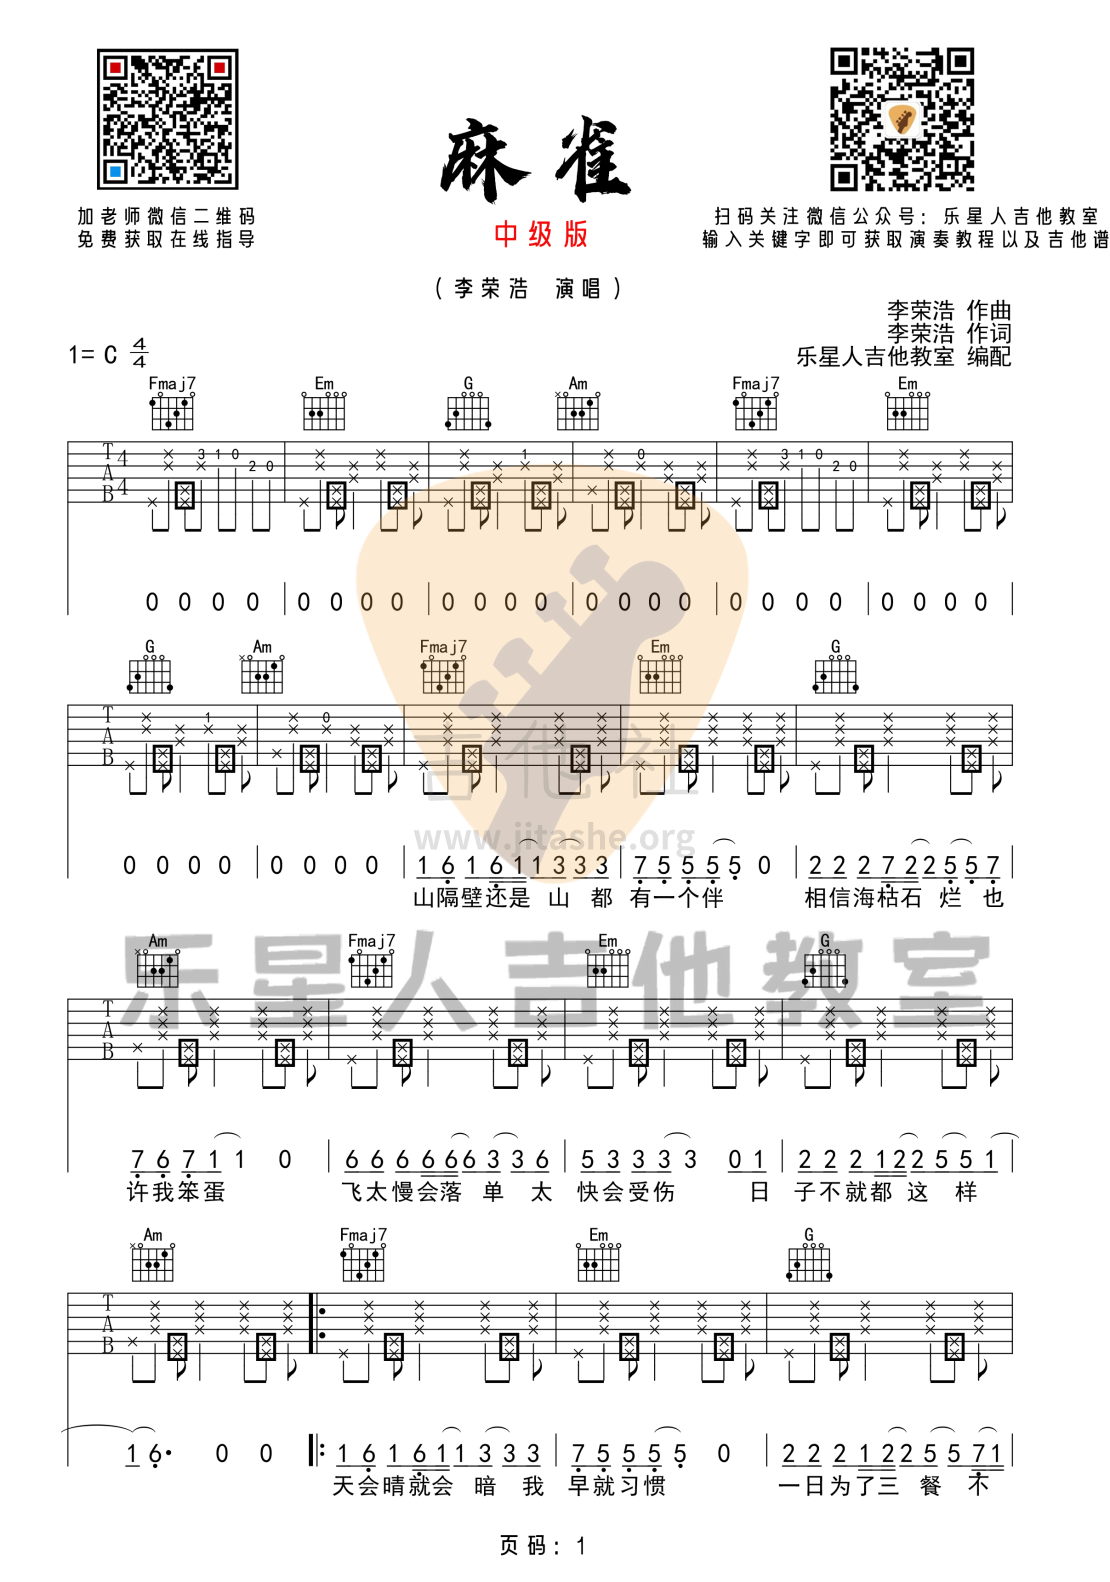 麻雀（完美版吉他谱_乐星人吉他教室编配）吉他谱(图片谱,李荣浩)_李荣浩_1 (1).png